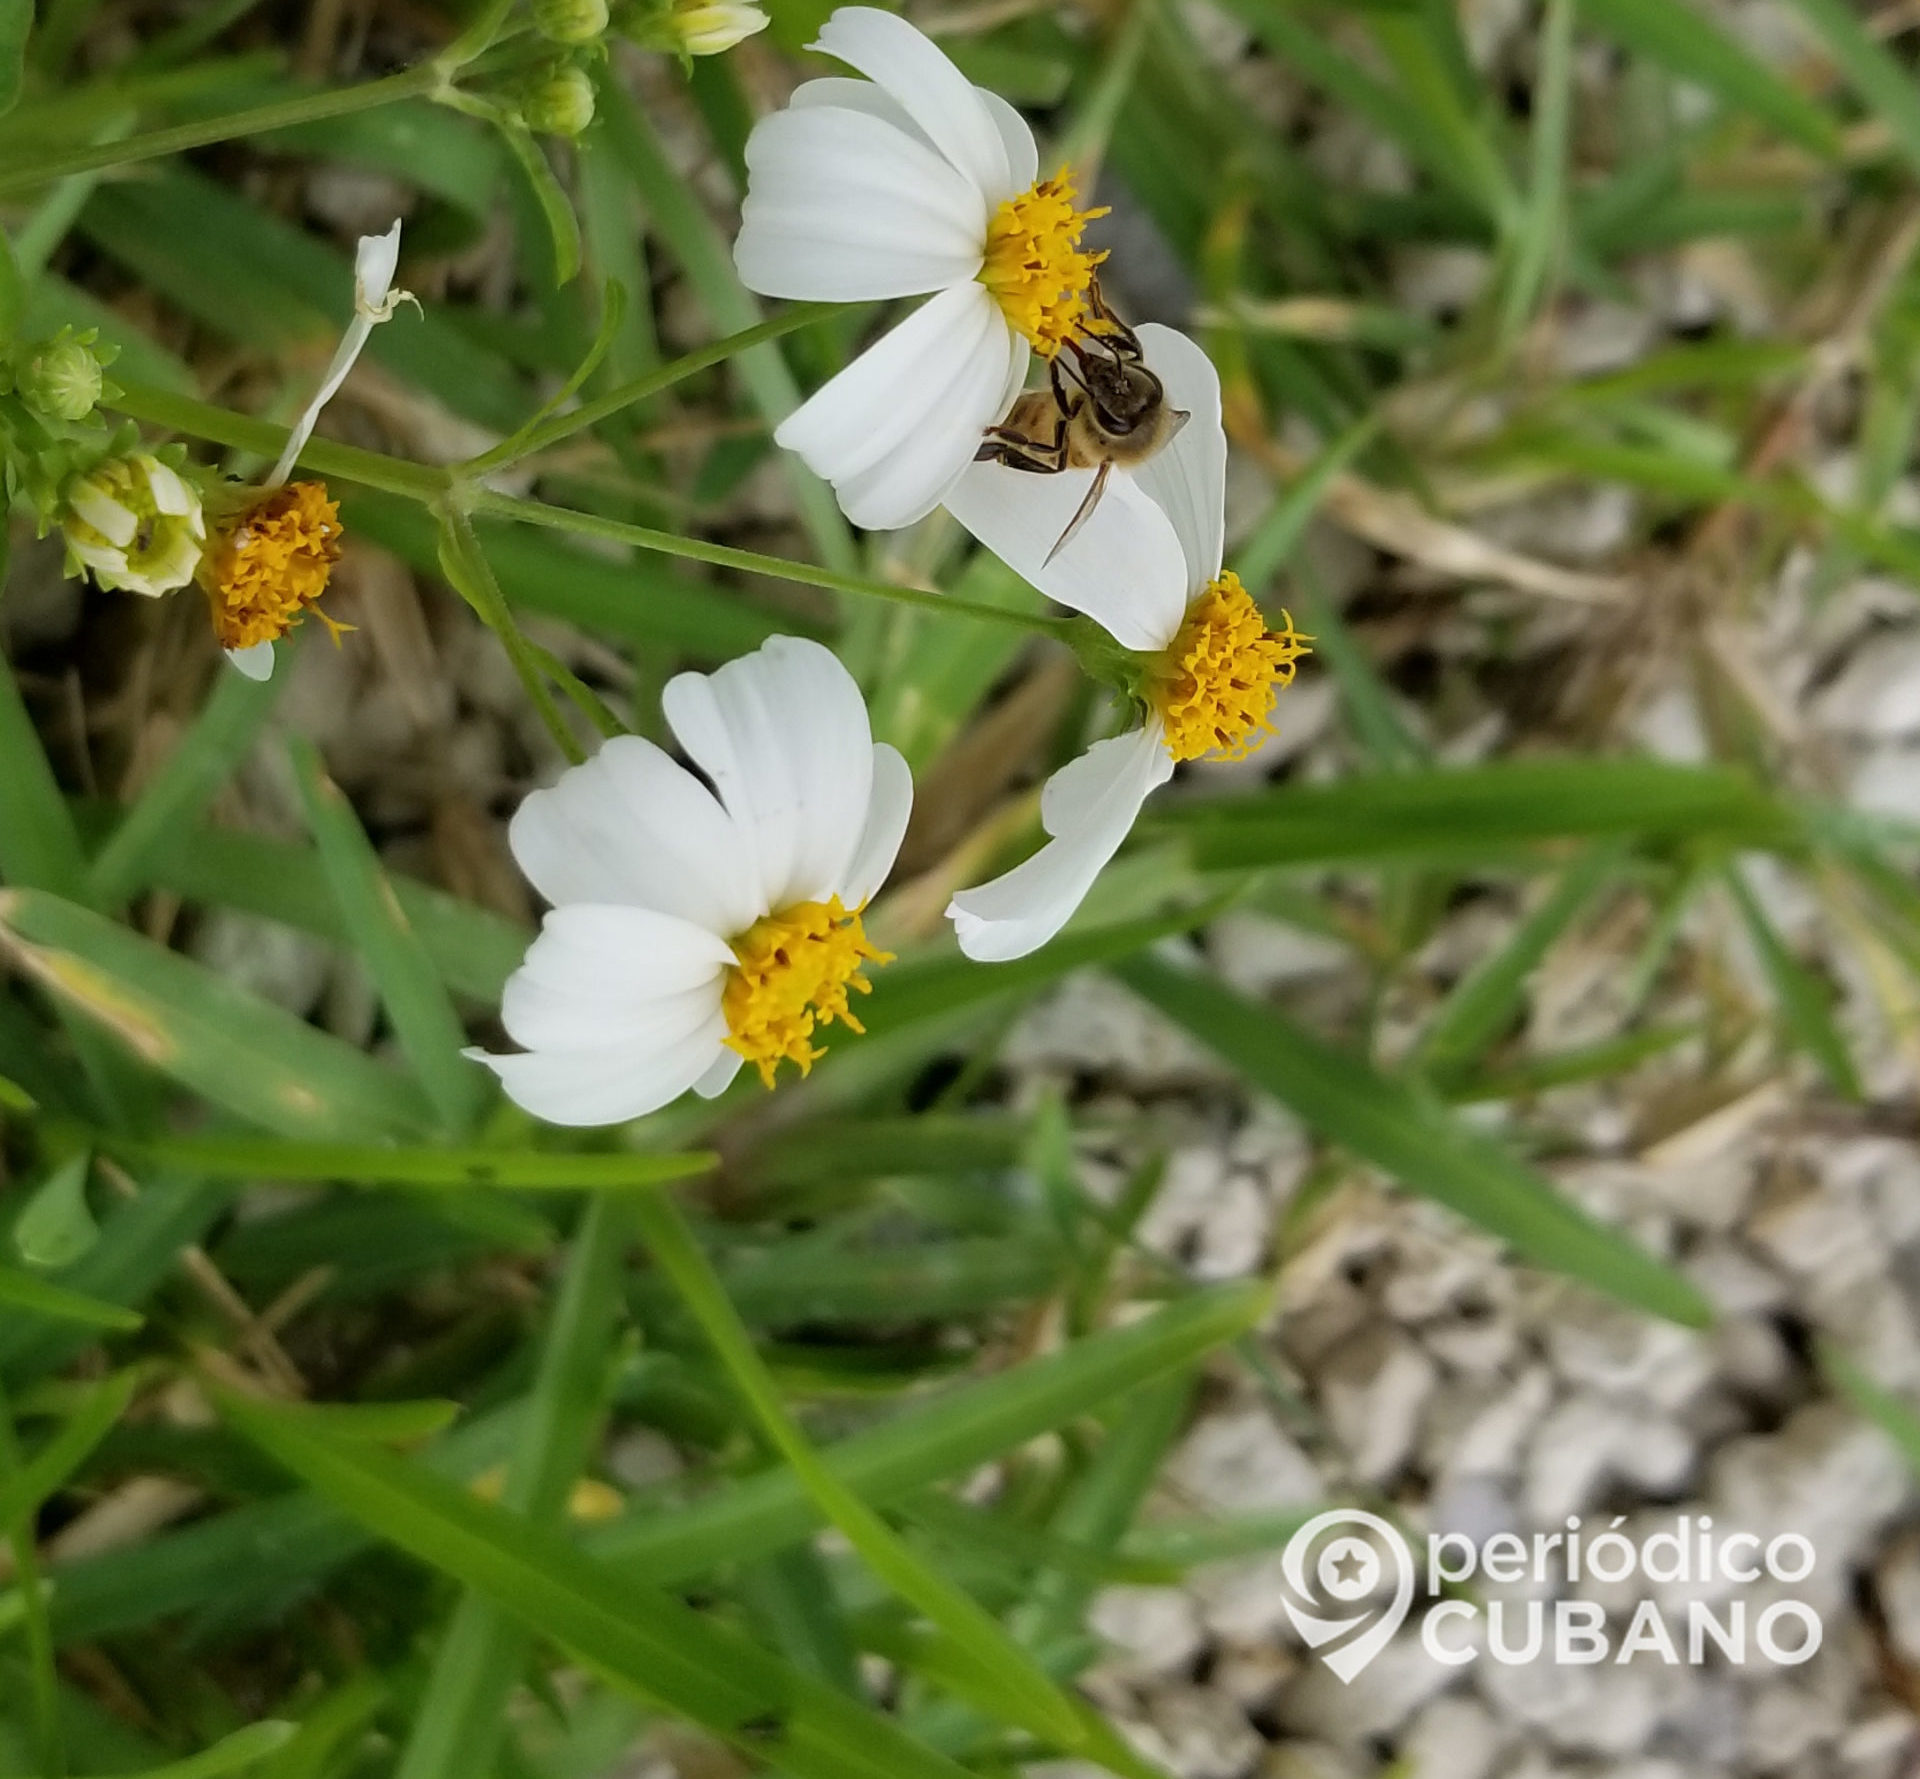 Colmenas de abejas y producción de miel corren peligro en Sancti Spíritus por falta de combustible